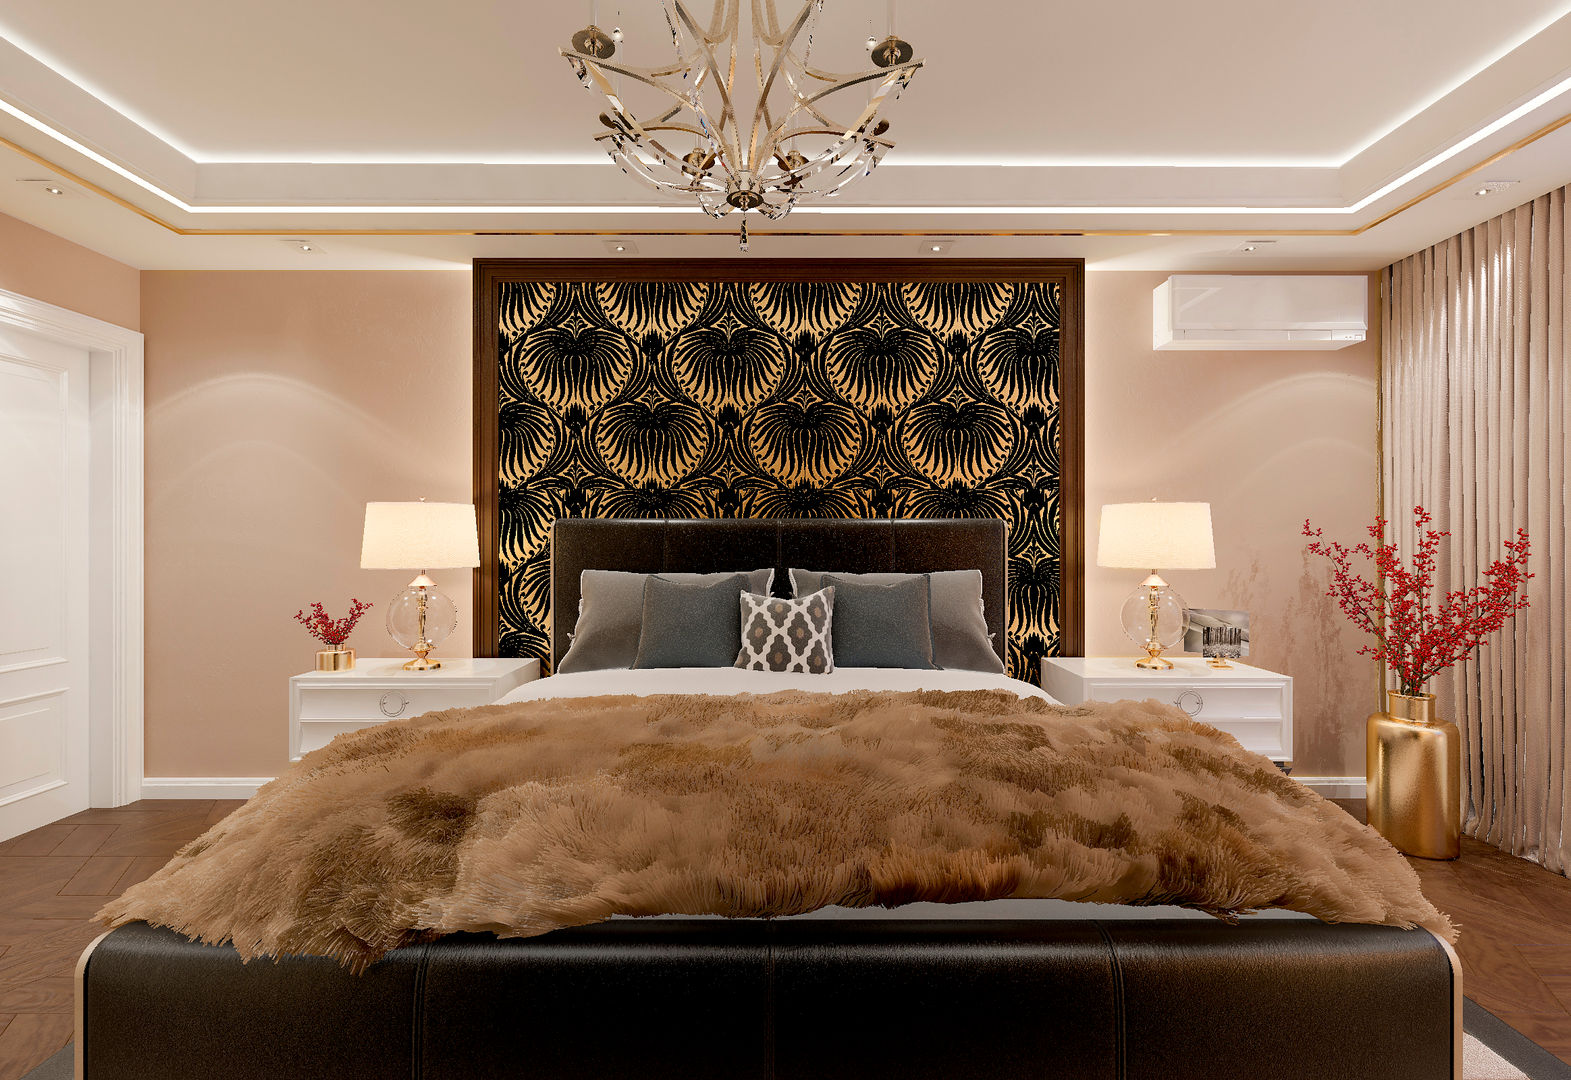 Спальня "Gold & fur", Студия дизайна Дарьи Одарюк Студия дизайна Дарьи Одарюк Classic style bedroom